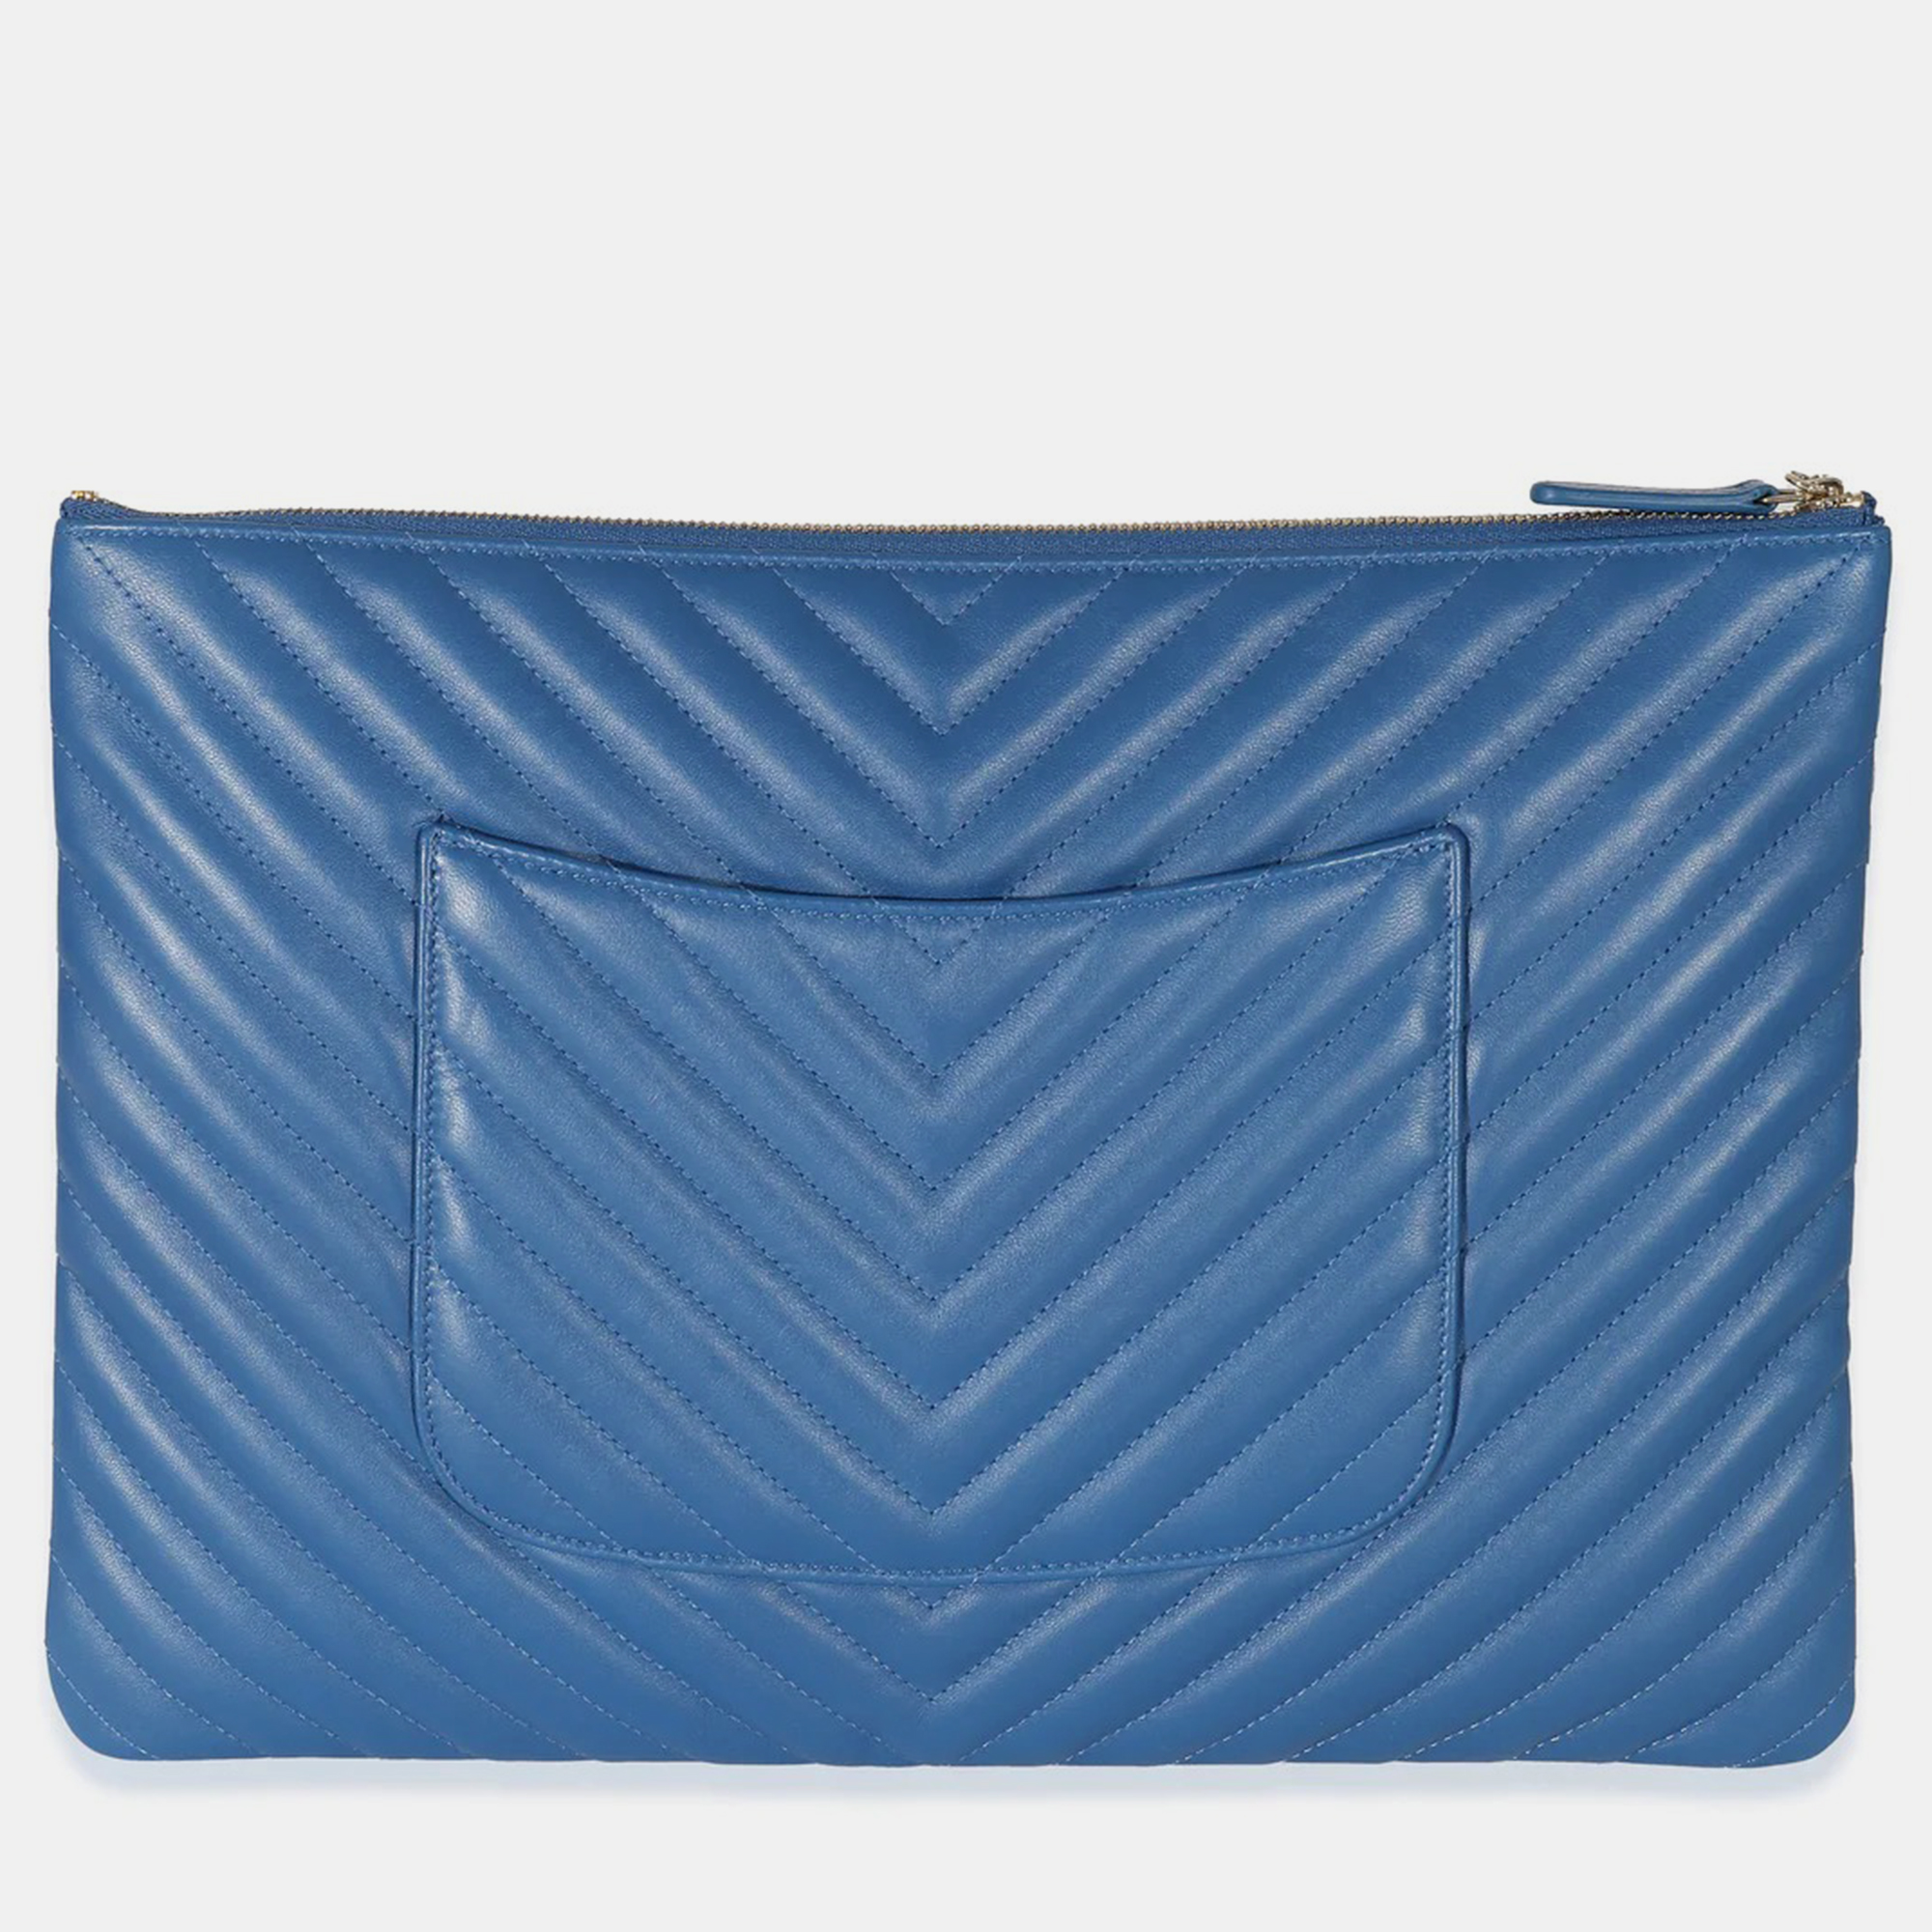 Chanel Blue Leather Medium Chevron O-Case Clutch Bag